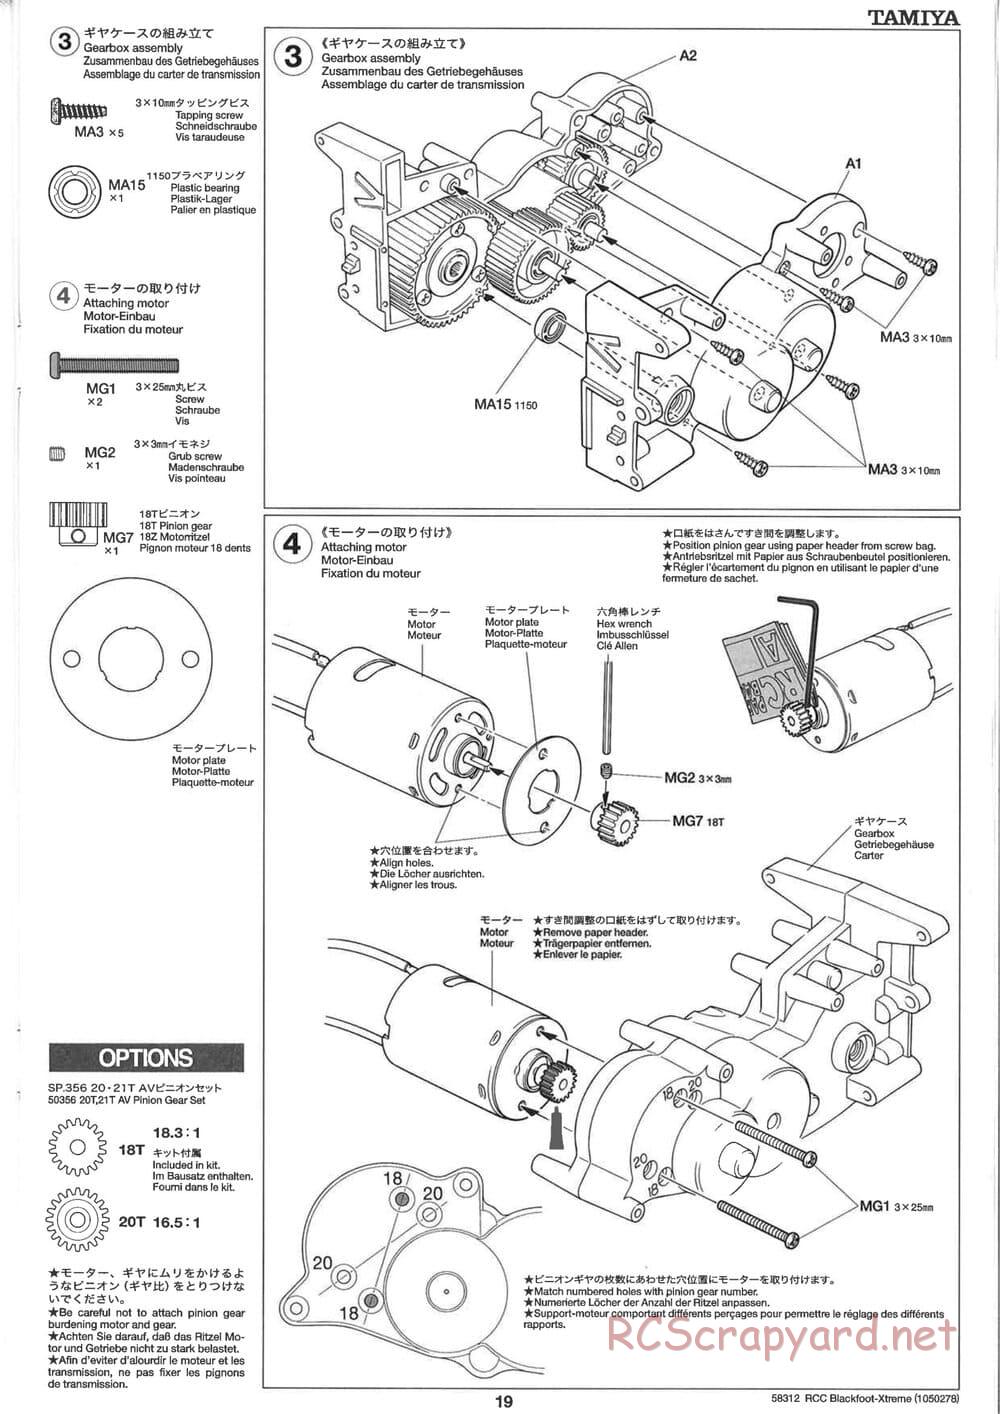 Tamiya - Blackfoot Xtreme - WT-01 Chassis - Manual - Page 19